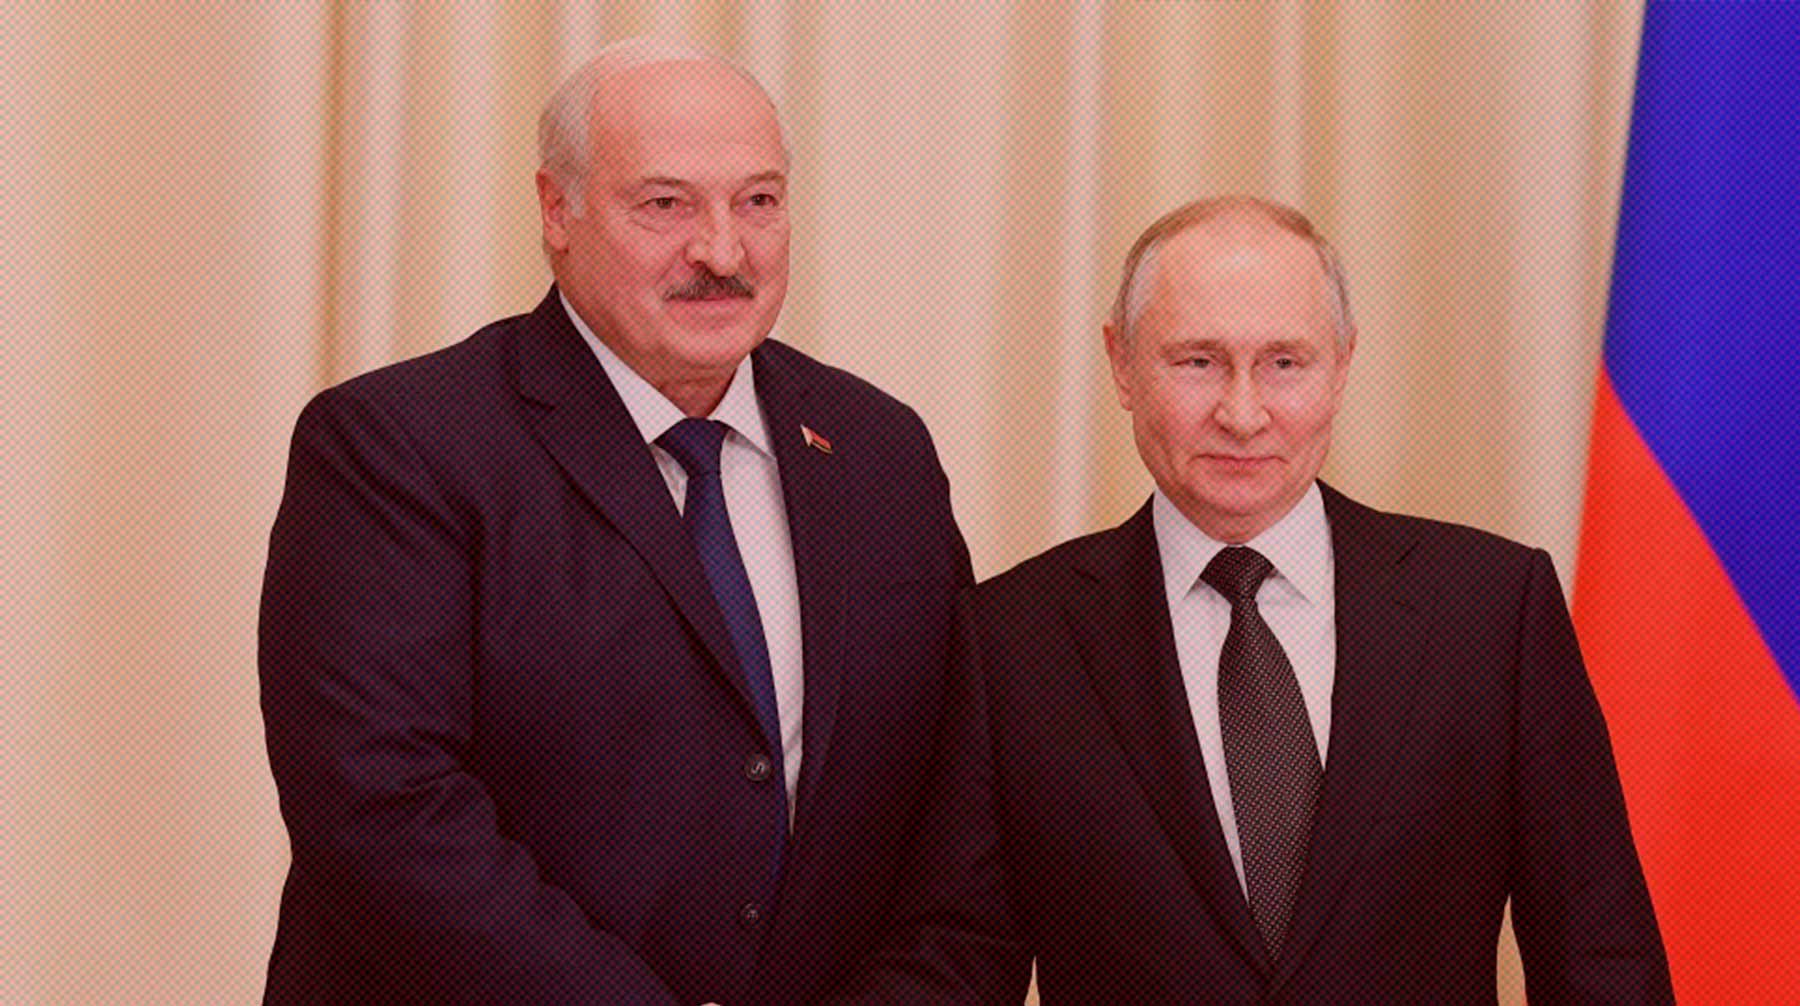 Dailystorm - Военное сотрудничество, сфера безопасности и IT: о чем говорят на встрече Путин и Лукашенко